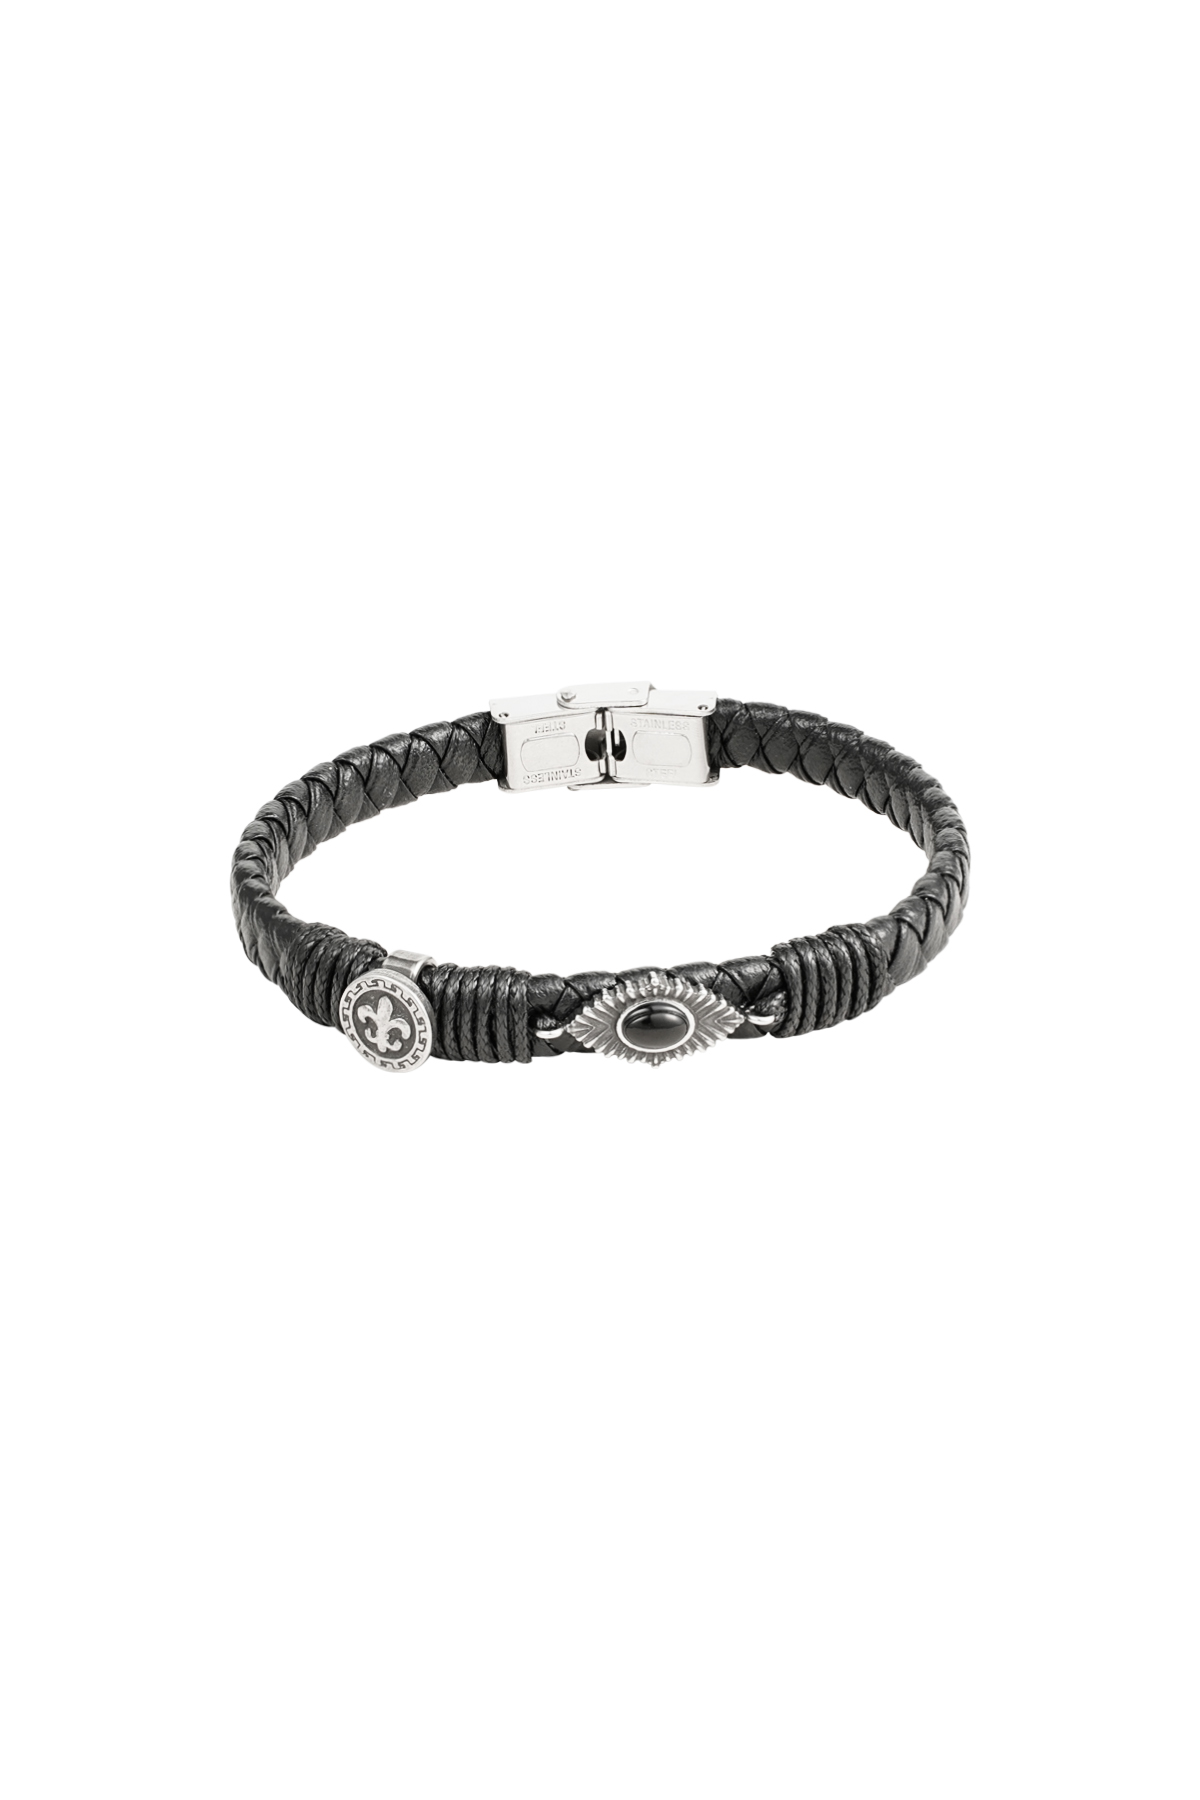 Heren armband gevlochten met steentjes - zilver/zwart h5 